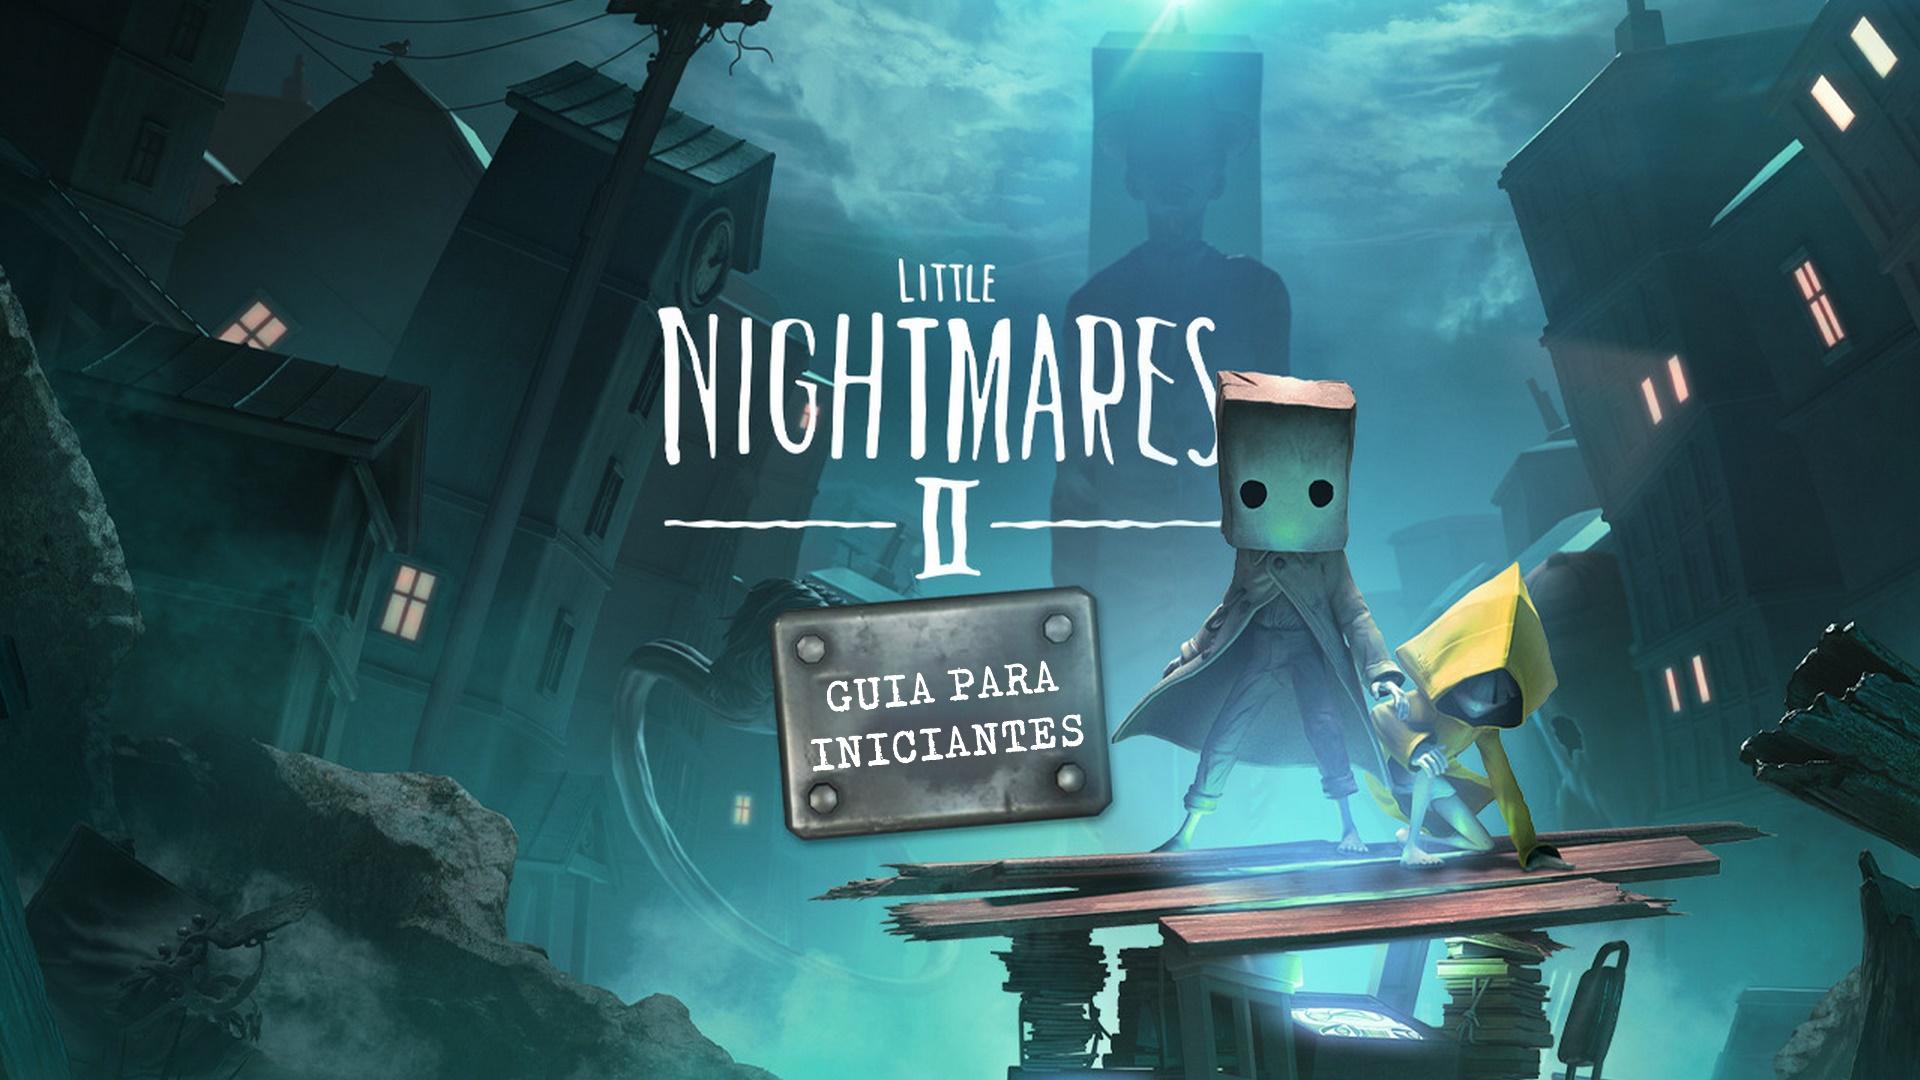 Estúdio não planeja lançar DLCs de Little Nightmares II por enquanto